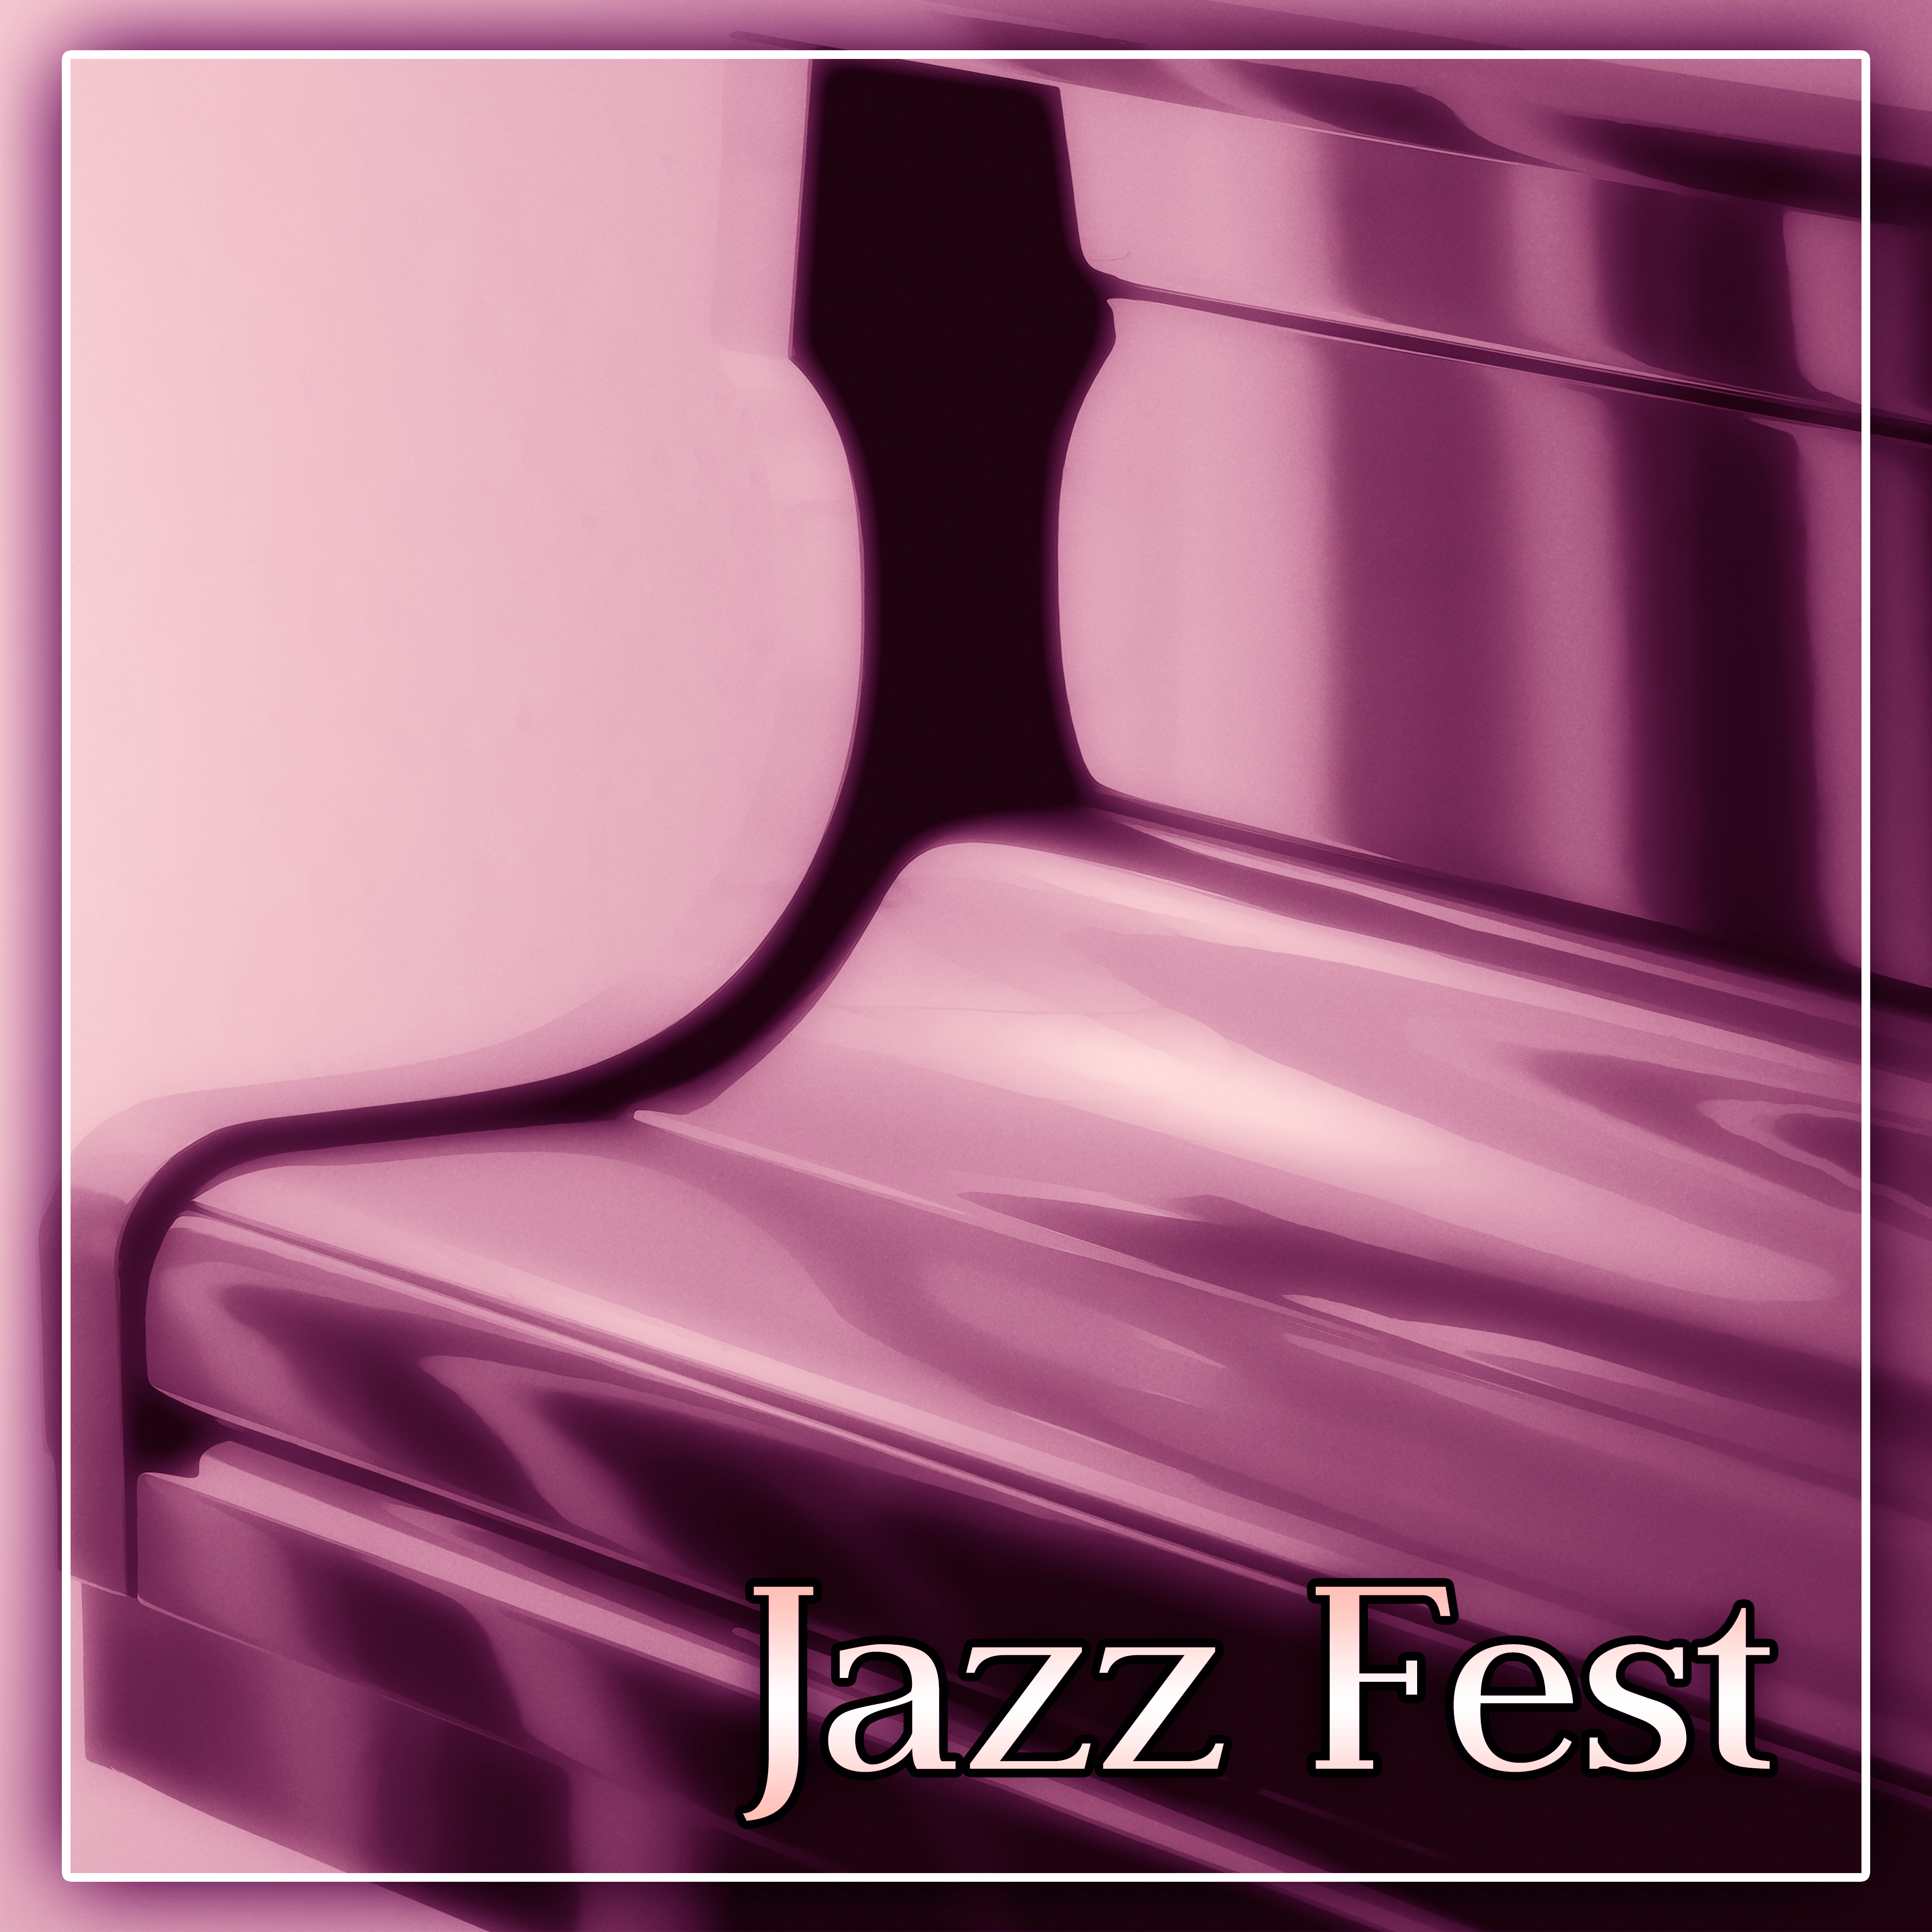 Jazz Fest  The Best Modern Jazz for Coffee Talk, Jazz Club  Jazz Bar, Instrumental Piano Jazz for Cocktail Party, Special Dinner, Slow Time with Instrumental Melody